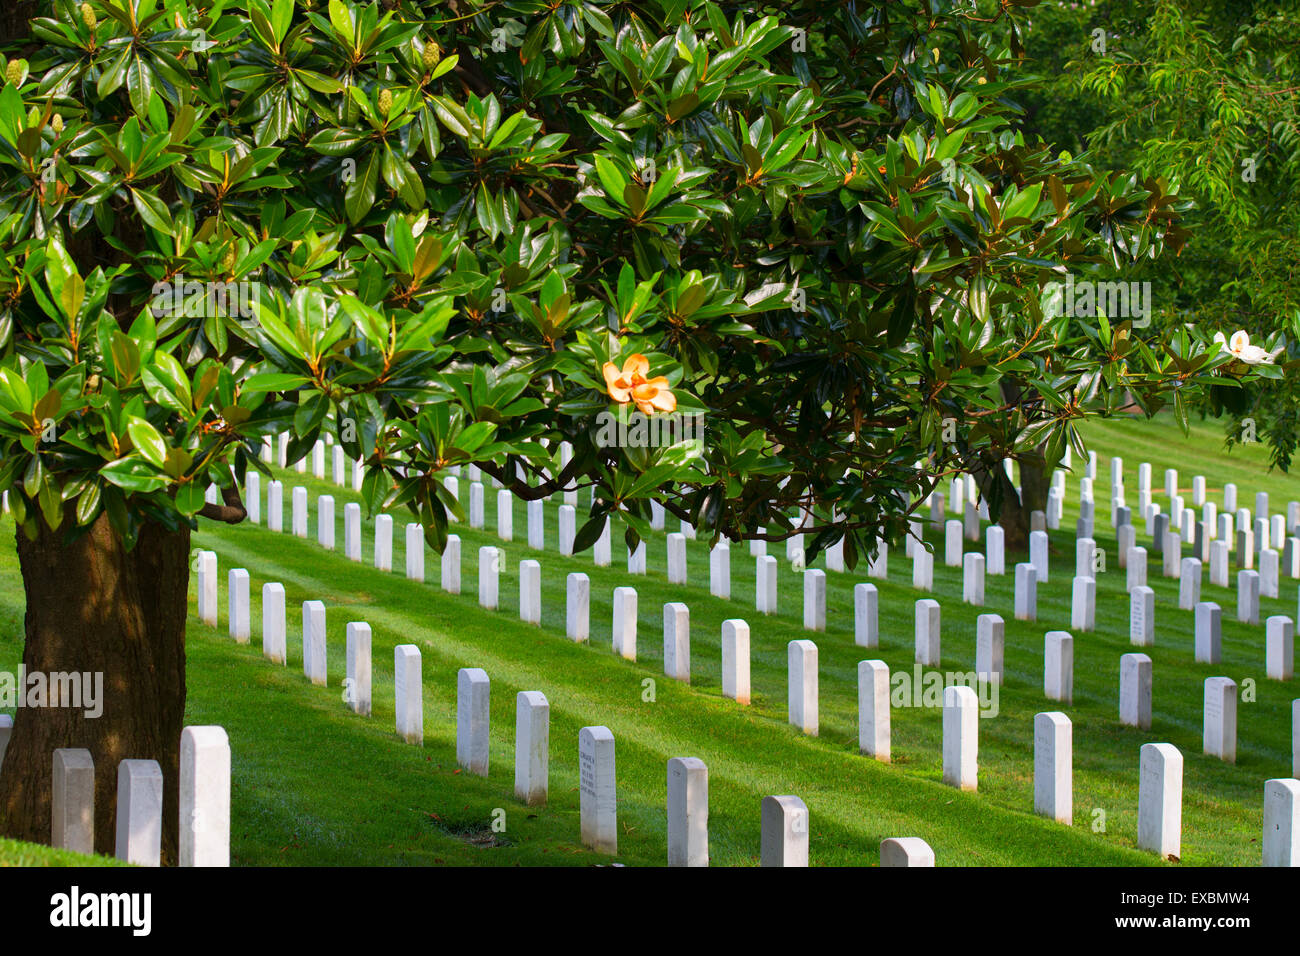 Headstones, Graves, Arlington National Cemetery, Shaded by Magnolia Tree, Virginia Stock Photo